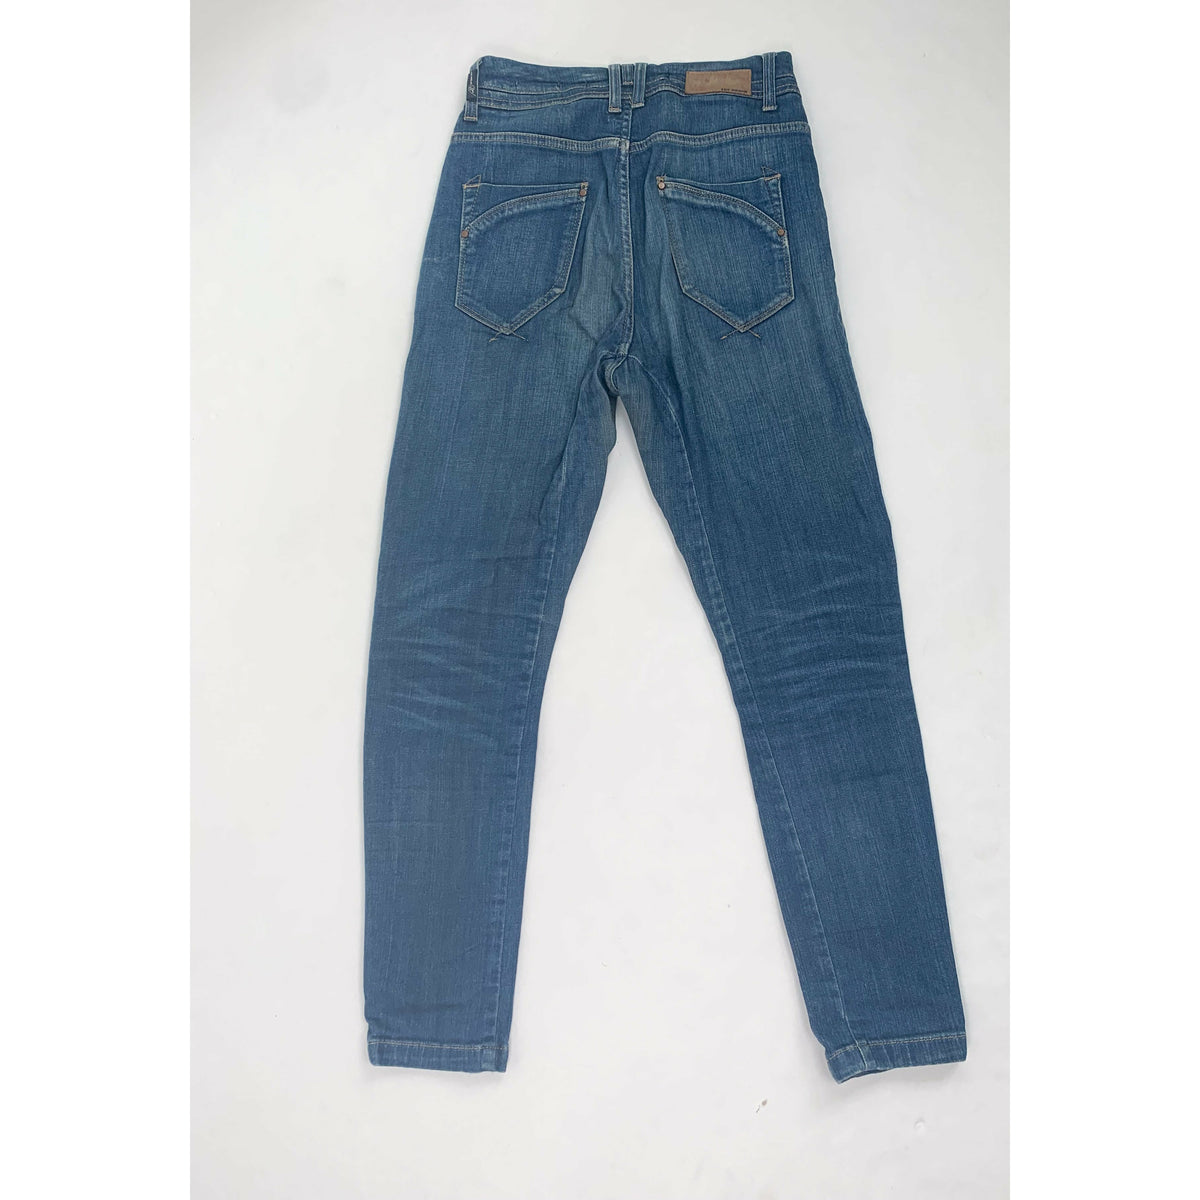 Zara - Denim Rules by TRF - Skinny Jeans